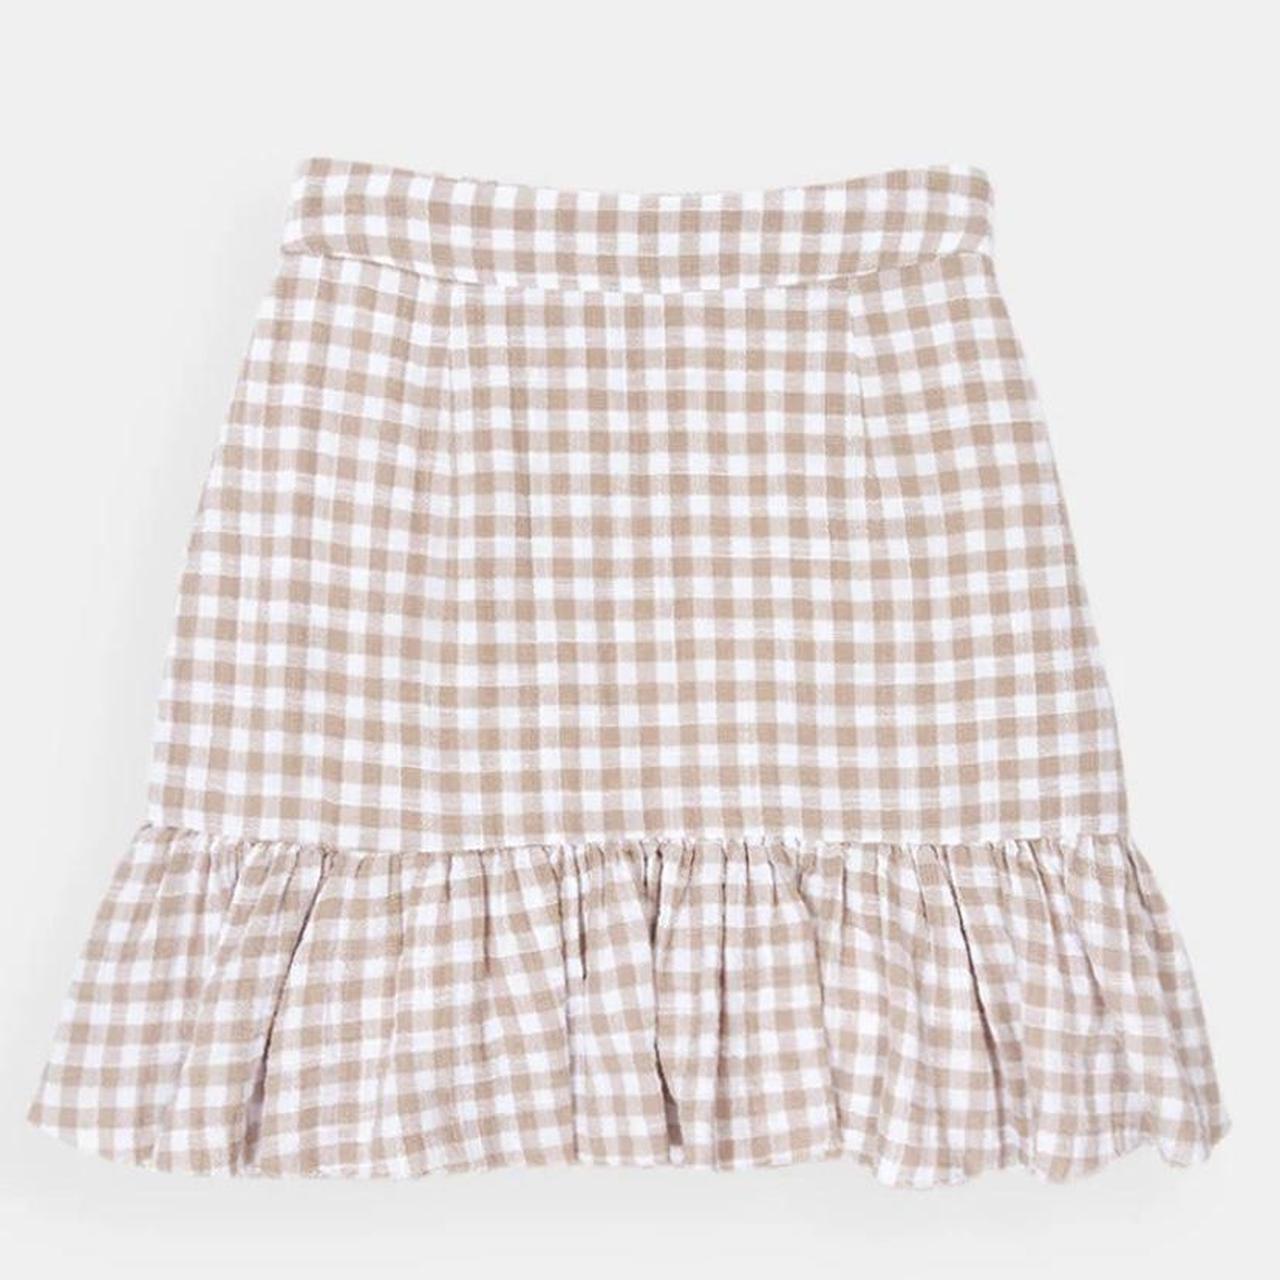 Ghanda checkered skirt Never been worn- Brand... - Depop